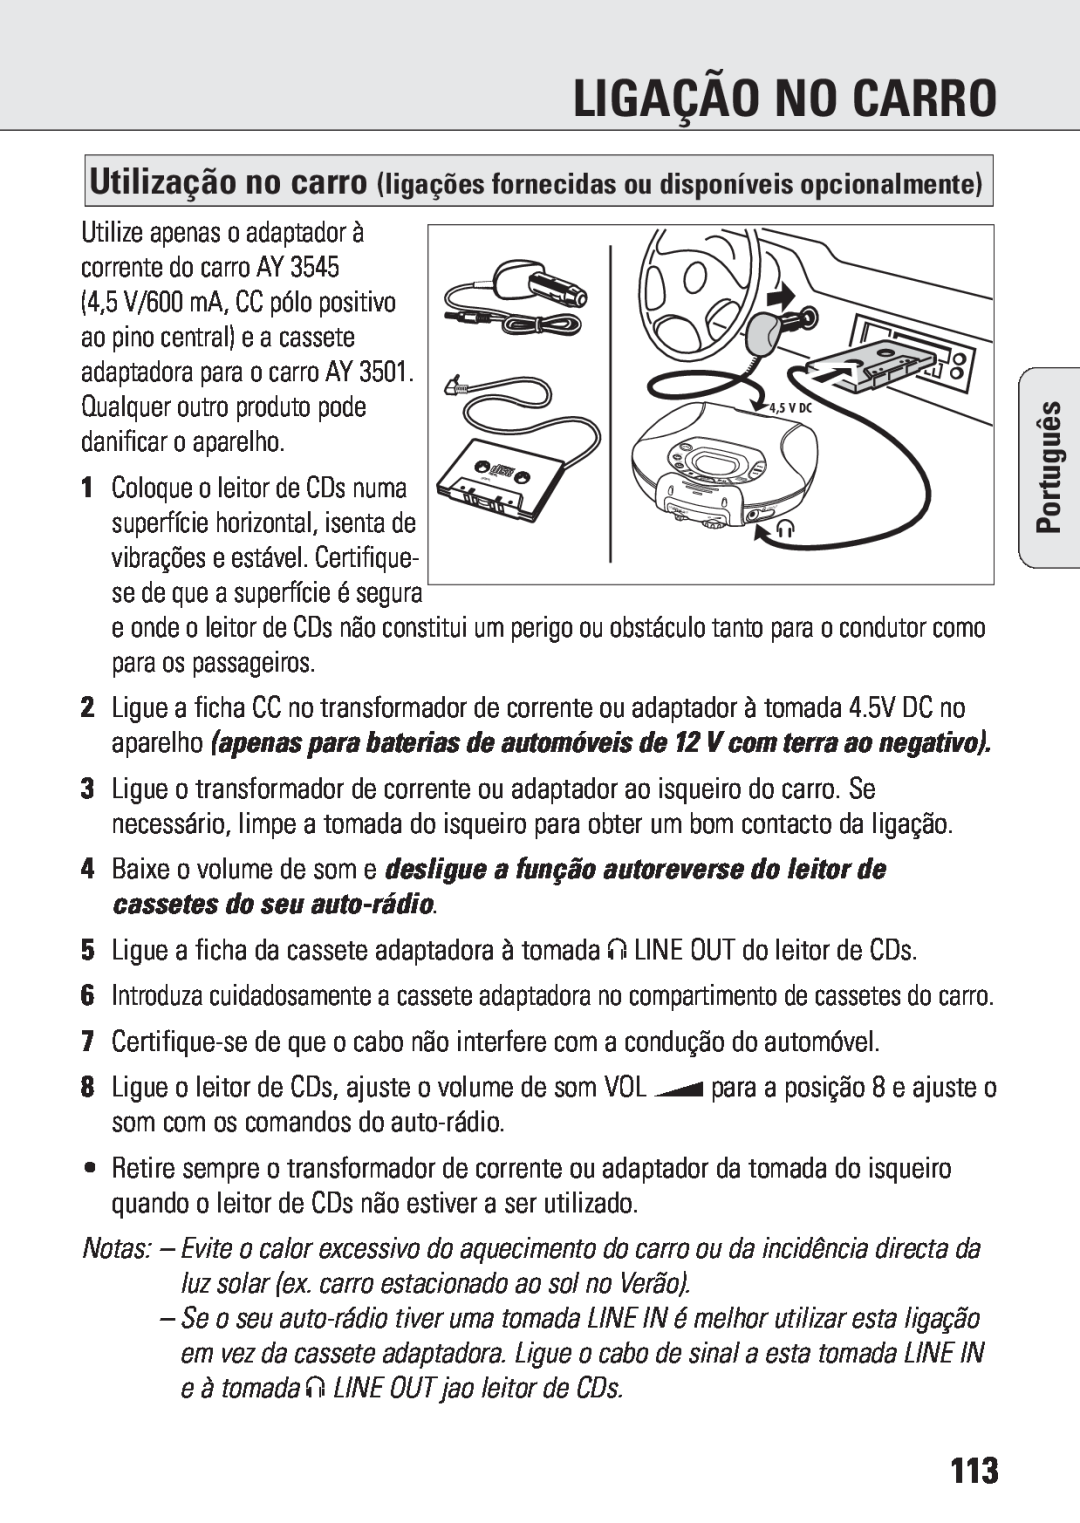 Philips ACT 7583 manual Ligação No Carro, Português 